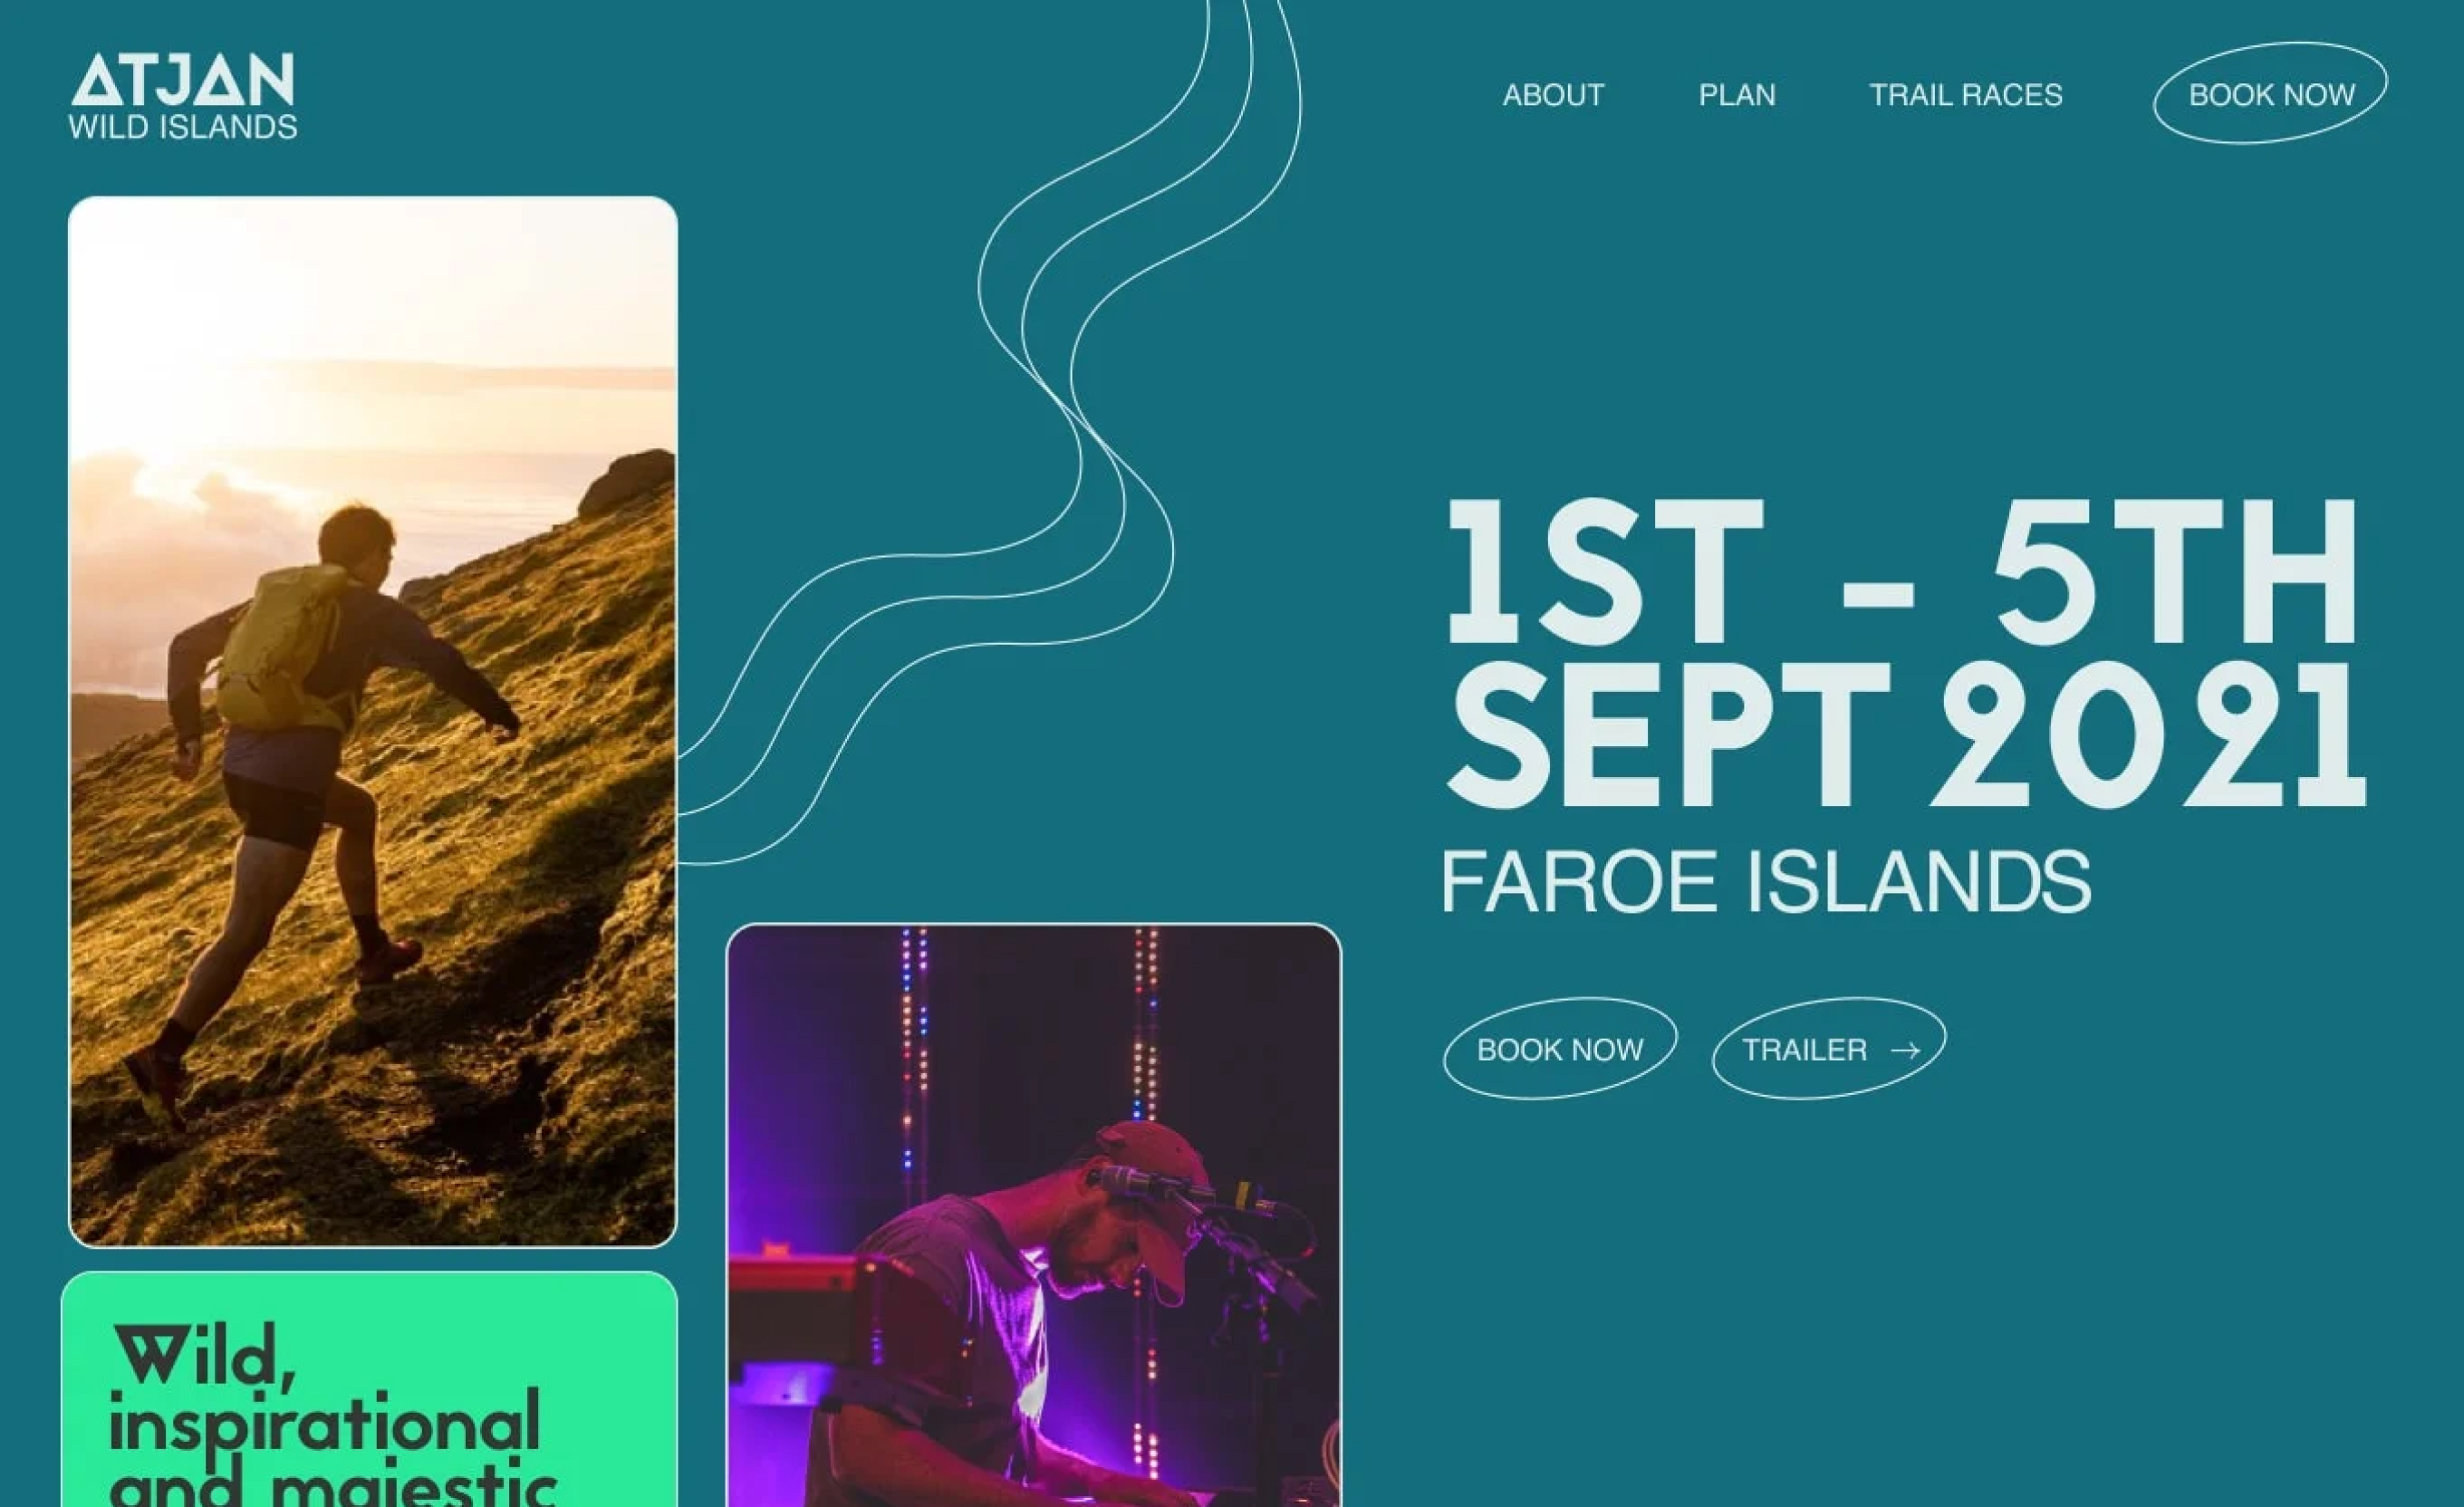 Atjan Wild Islands website